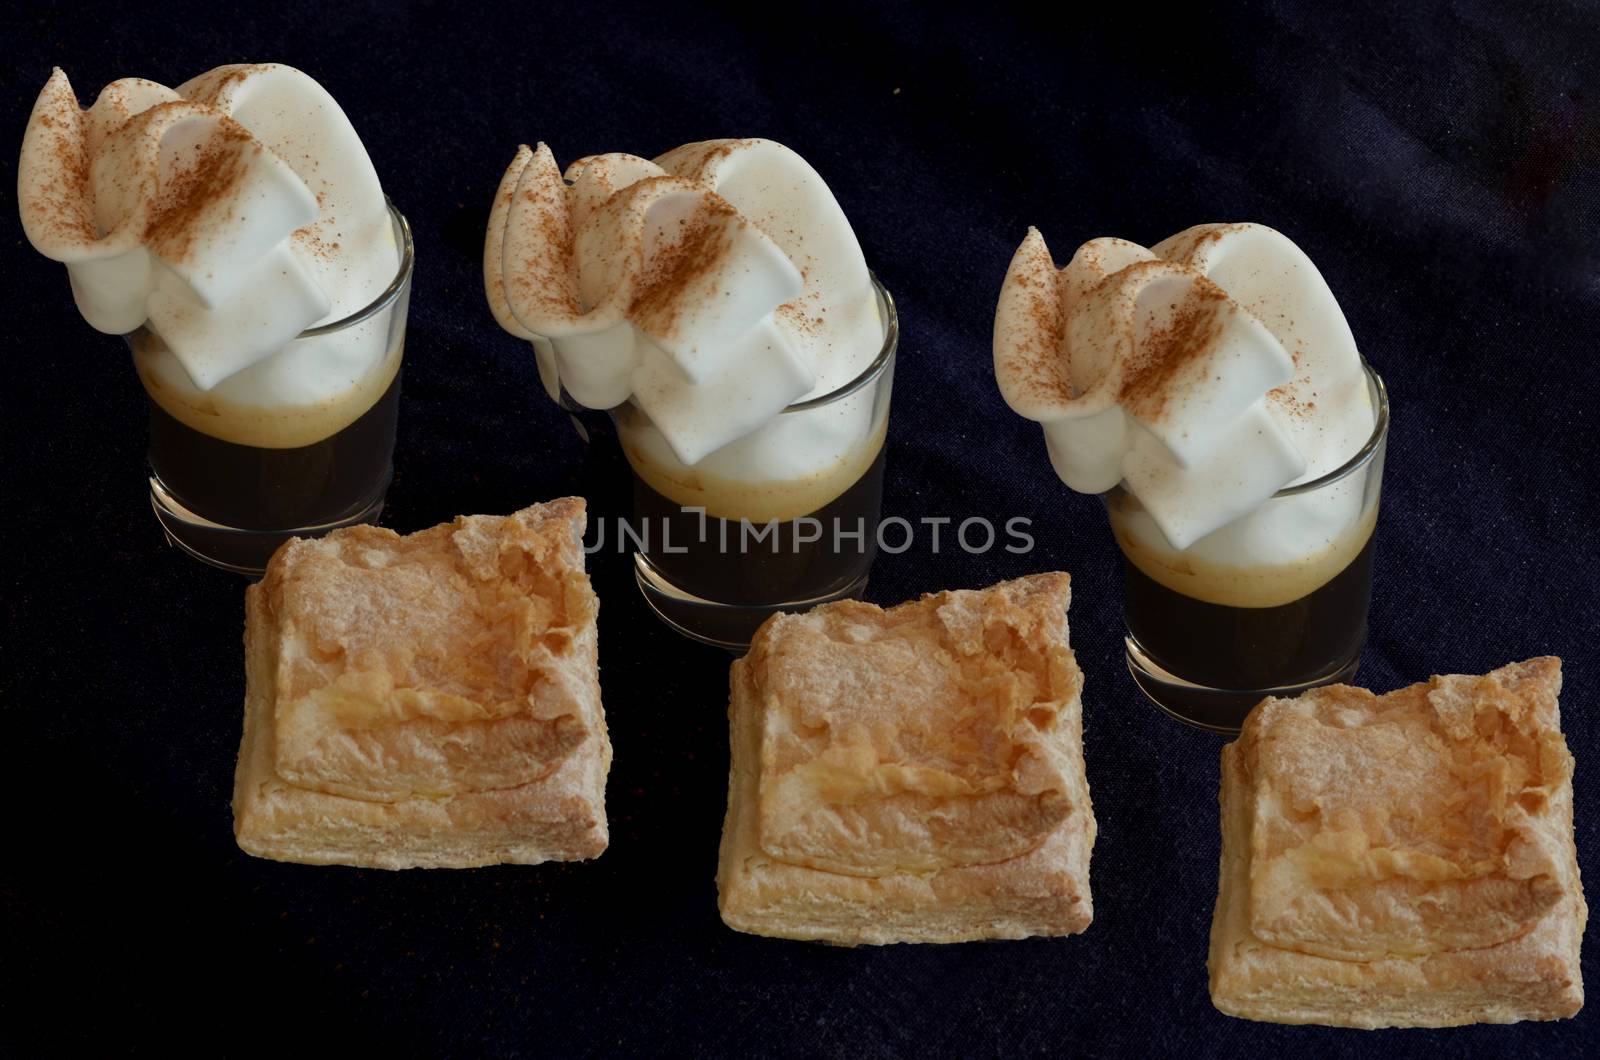 Coffee cream and cake by bpardofotografia